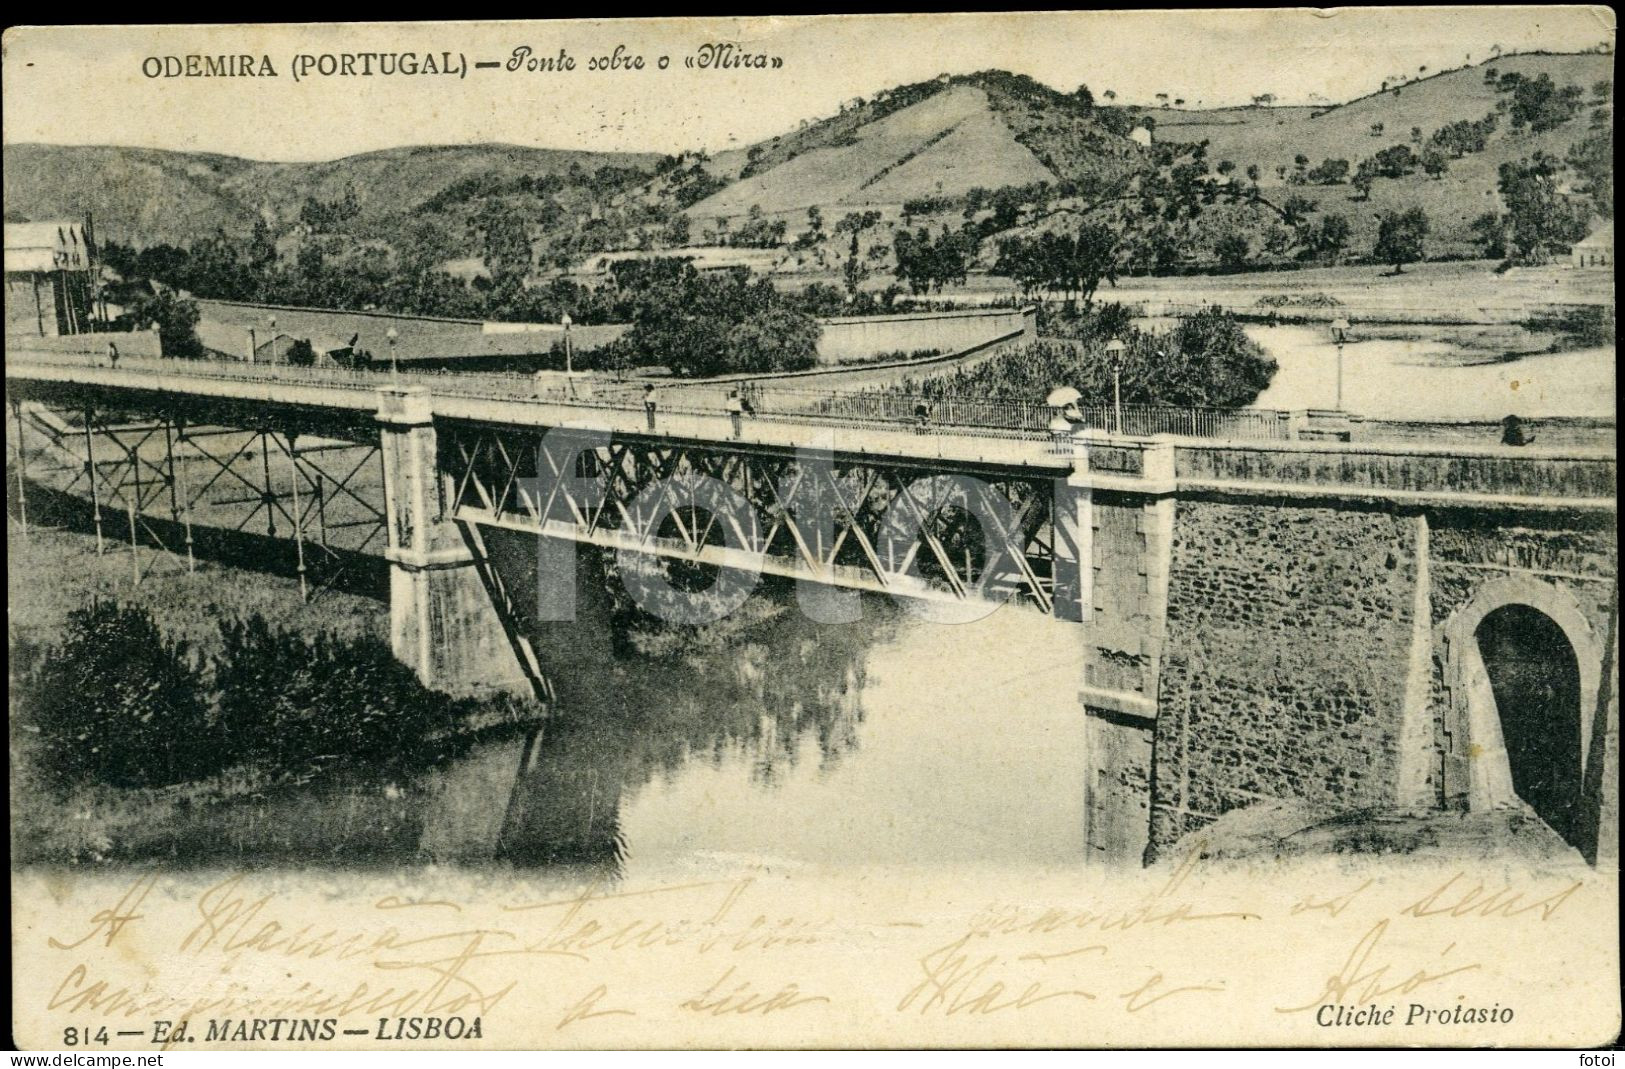 1905 OLD POSTCARD ODEMIRA PONTE RIO MIRA COSTA ALENTEJANA BEJA ALENTEJO PORTUGAL CARTE POSTALE - Setúbal